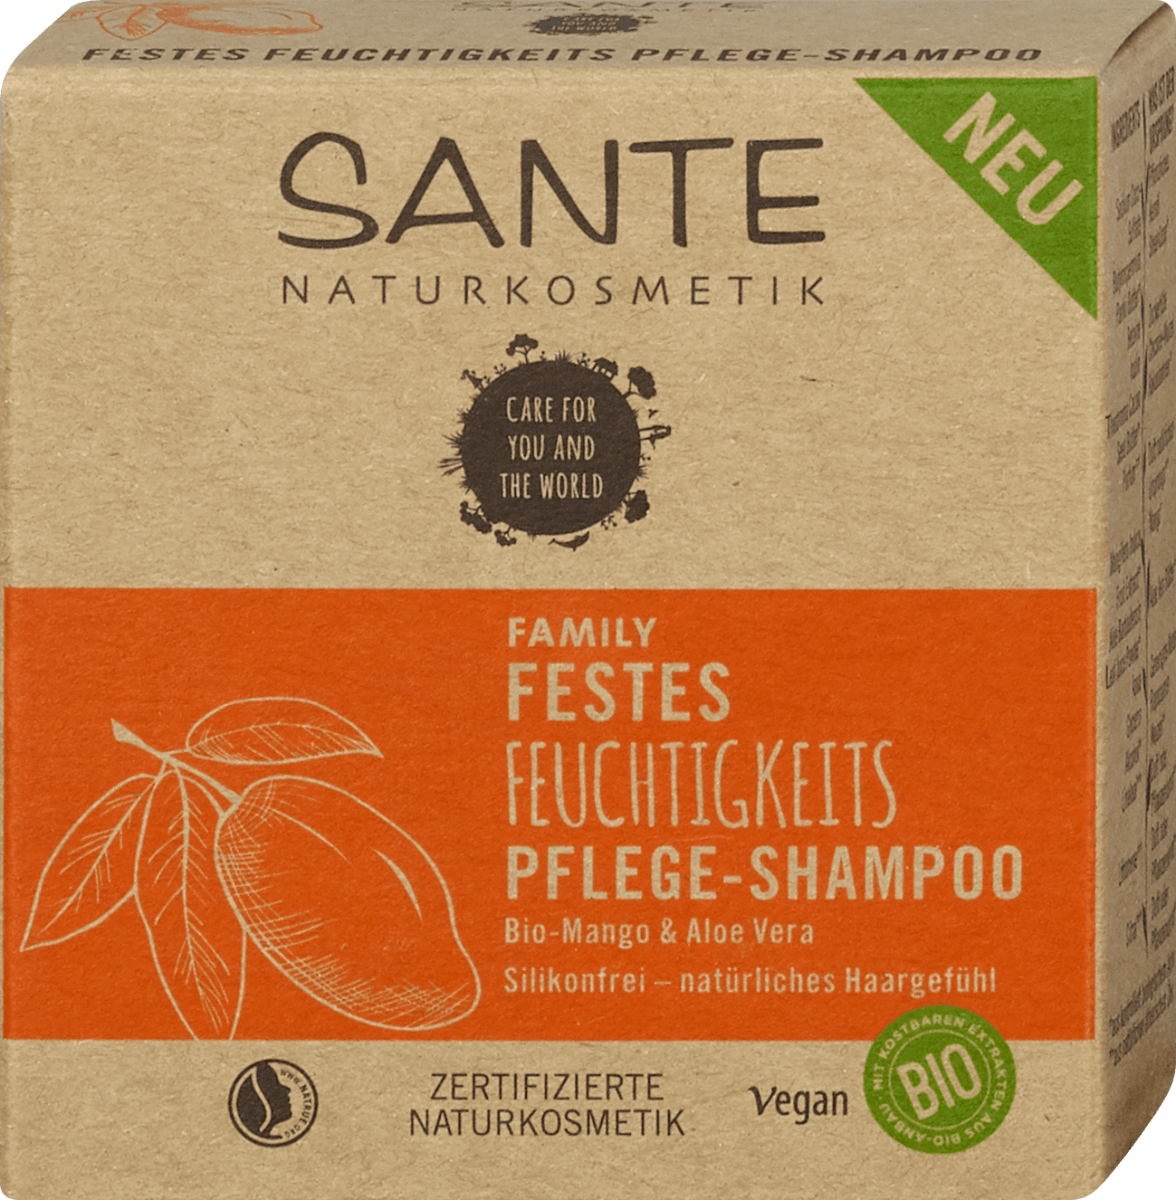 SANTE NATURKOSMETIK Family Festes Feuchtigkeits Pflege-Shampoo, 60 g | Spülungen